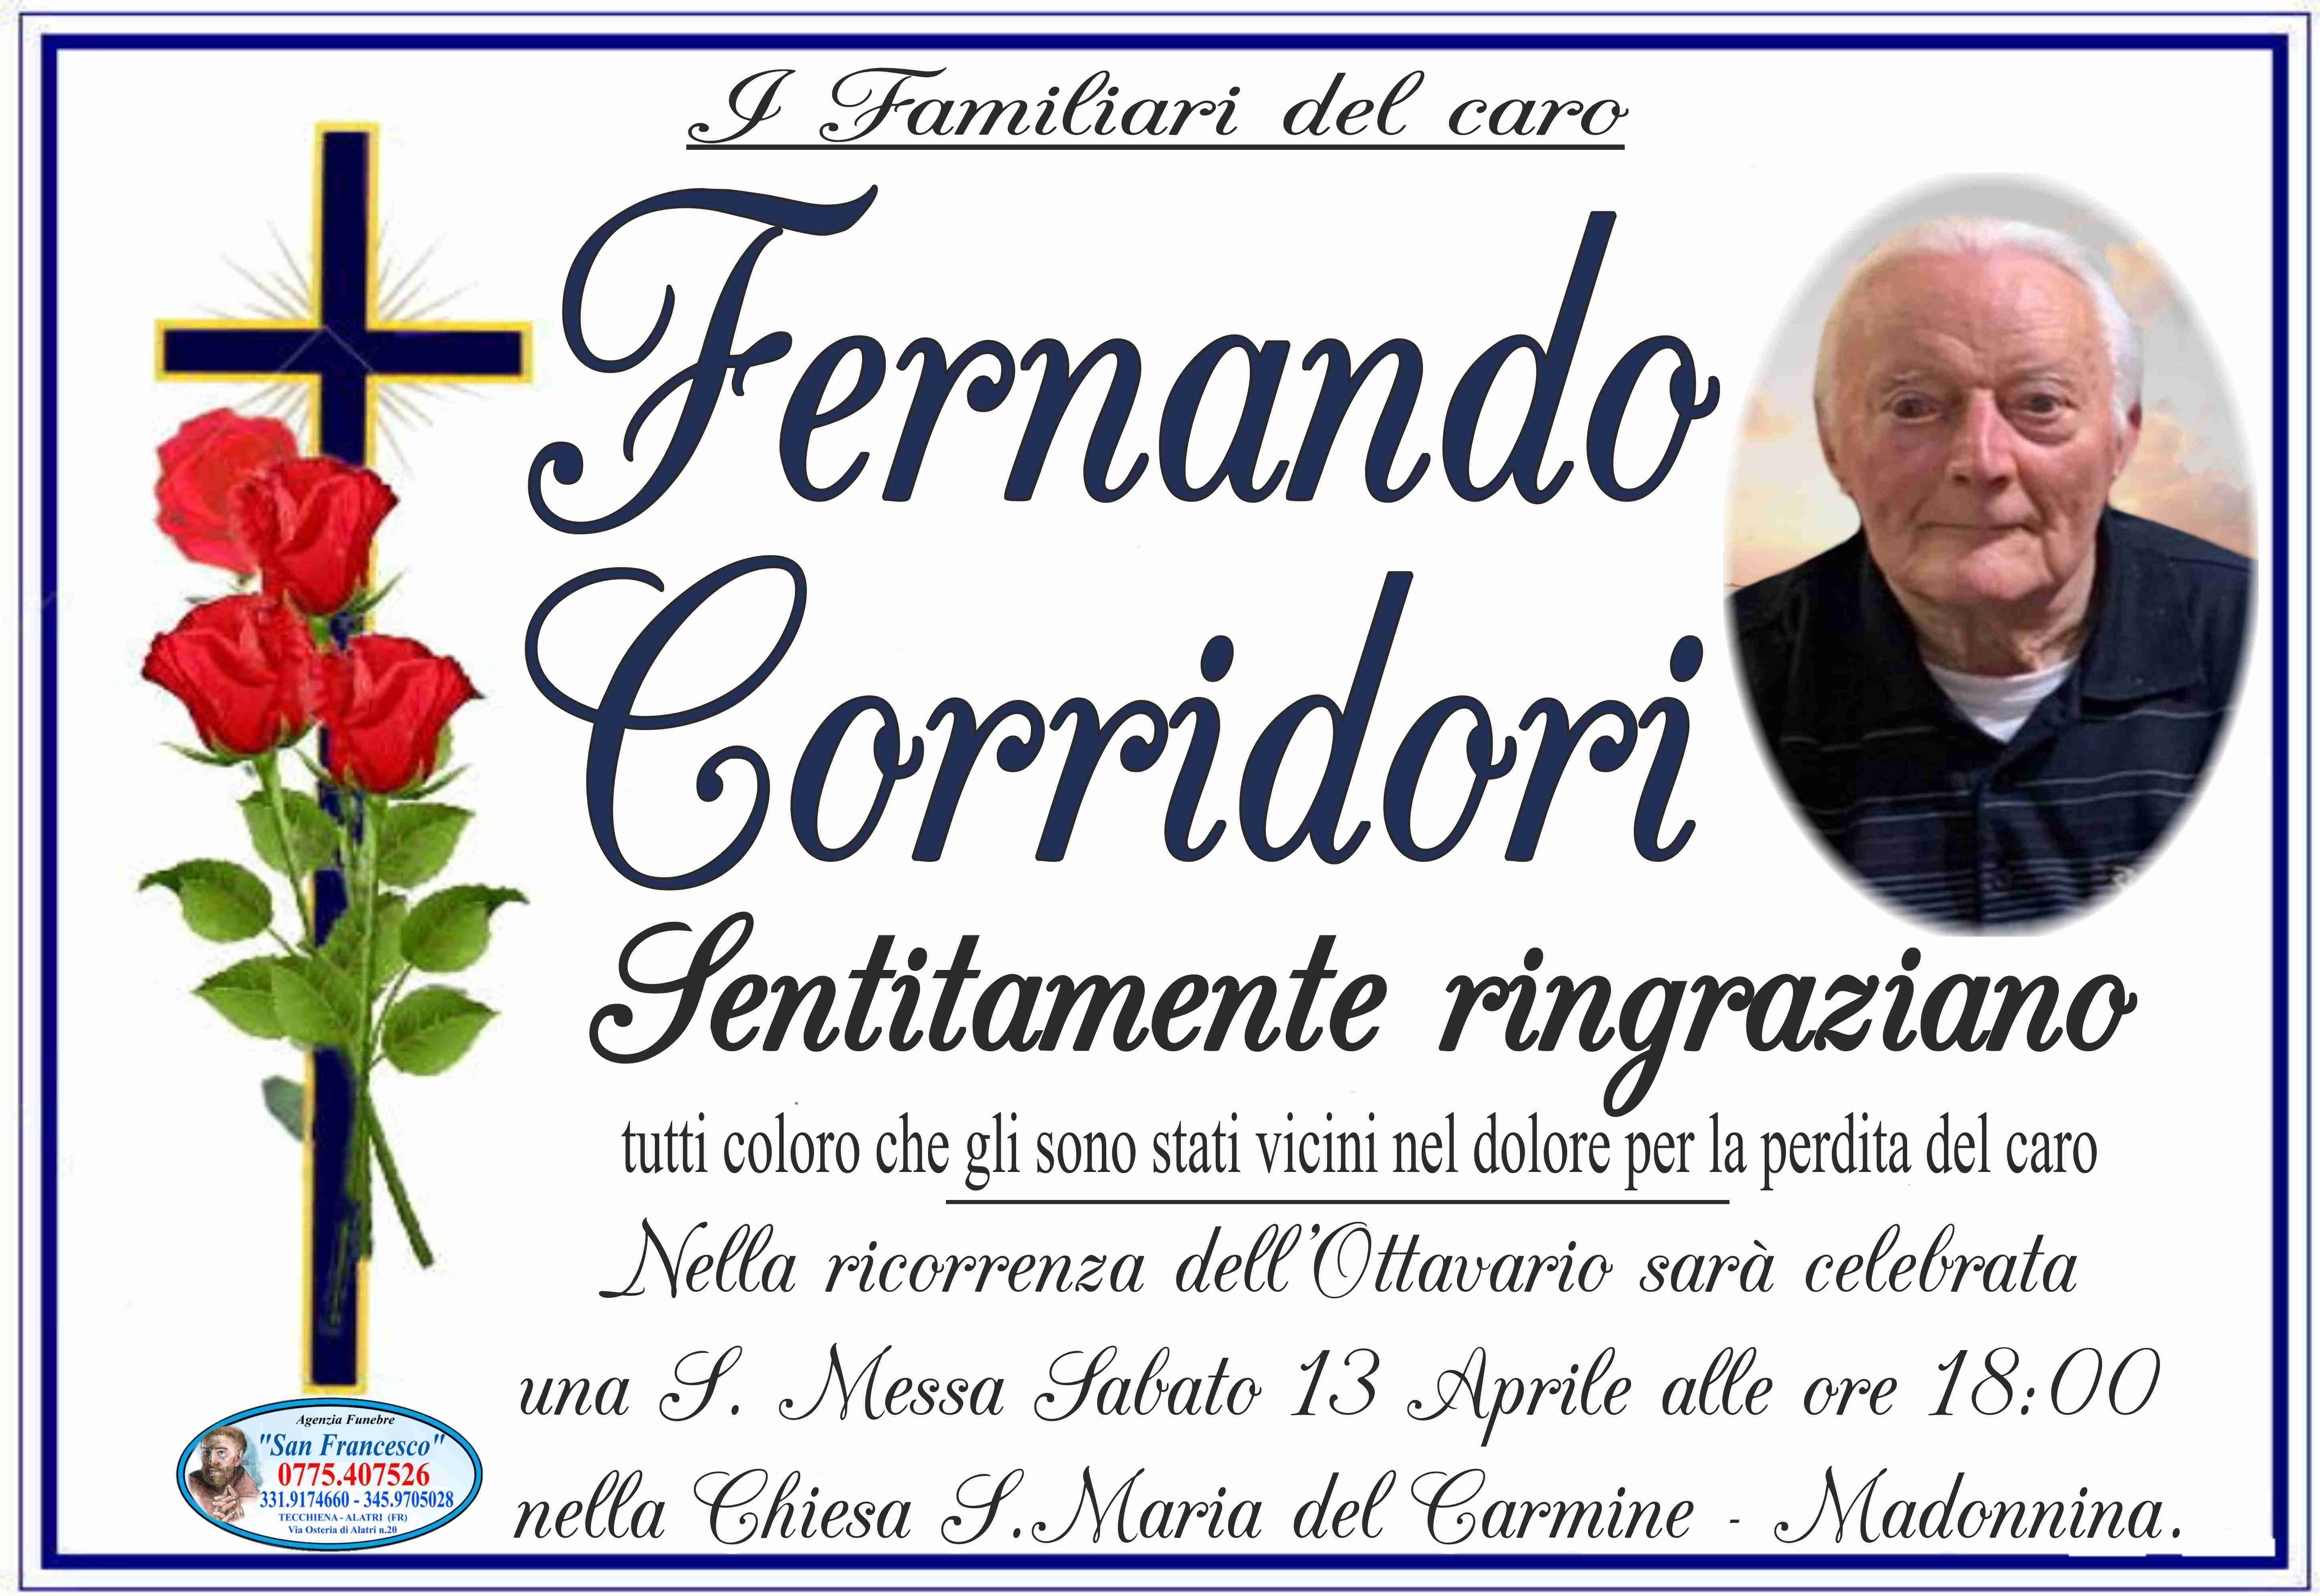 Fernando Corridori